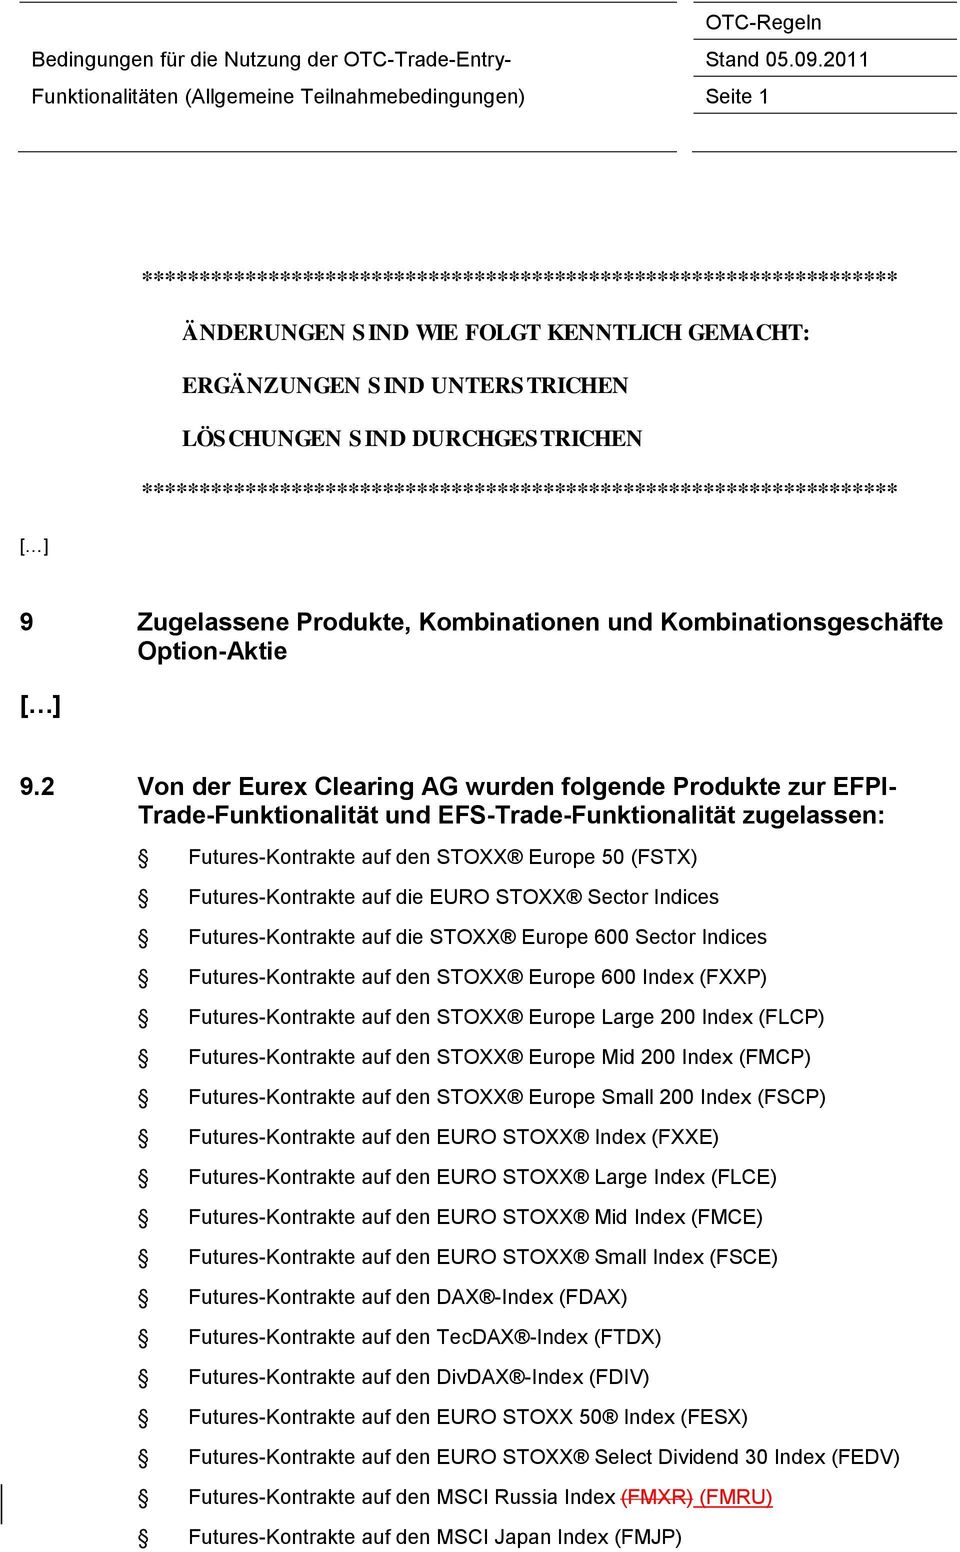 2 Von der Eurex Clearing AG wurden folgende Produkte zur EFPI- Trade-Funktionalität und EFS-Trade-Funktionalität zugelassen: Futures-Kontrakte auf den STOXX Europe 50 (FSTX) Futures-Kontrakte auf die